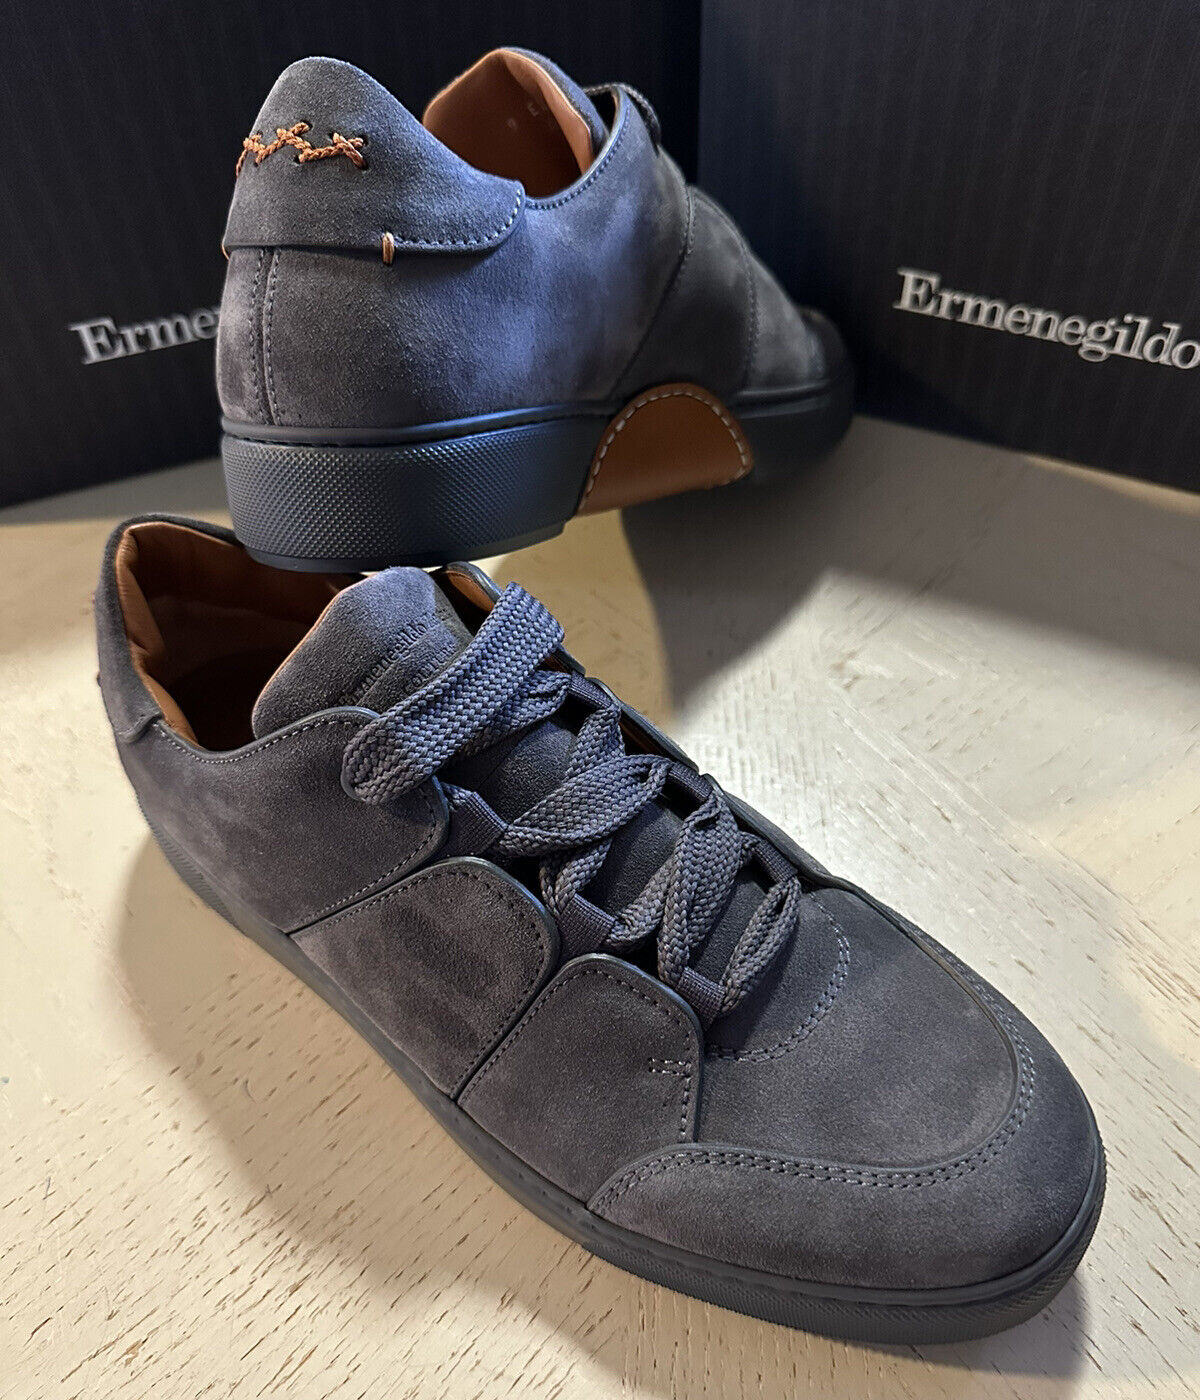 Новые замшевые/кожаные кроссовки Ermenegildo Zegna Couture за 850 долларов США, темно-серые 9,5 США